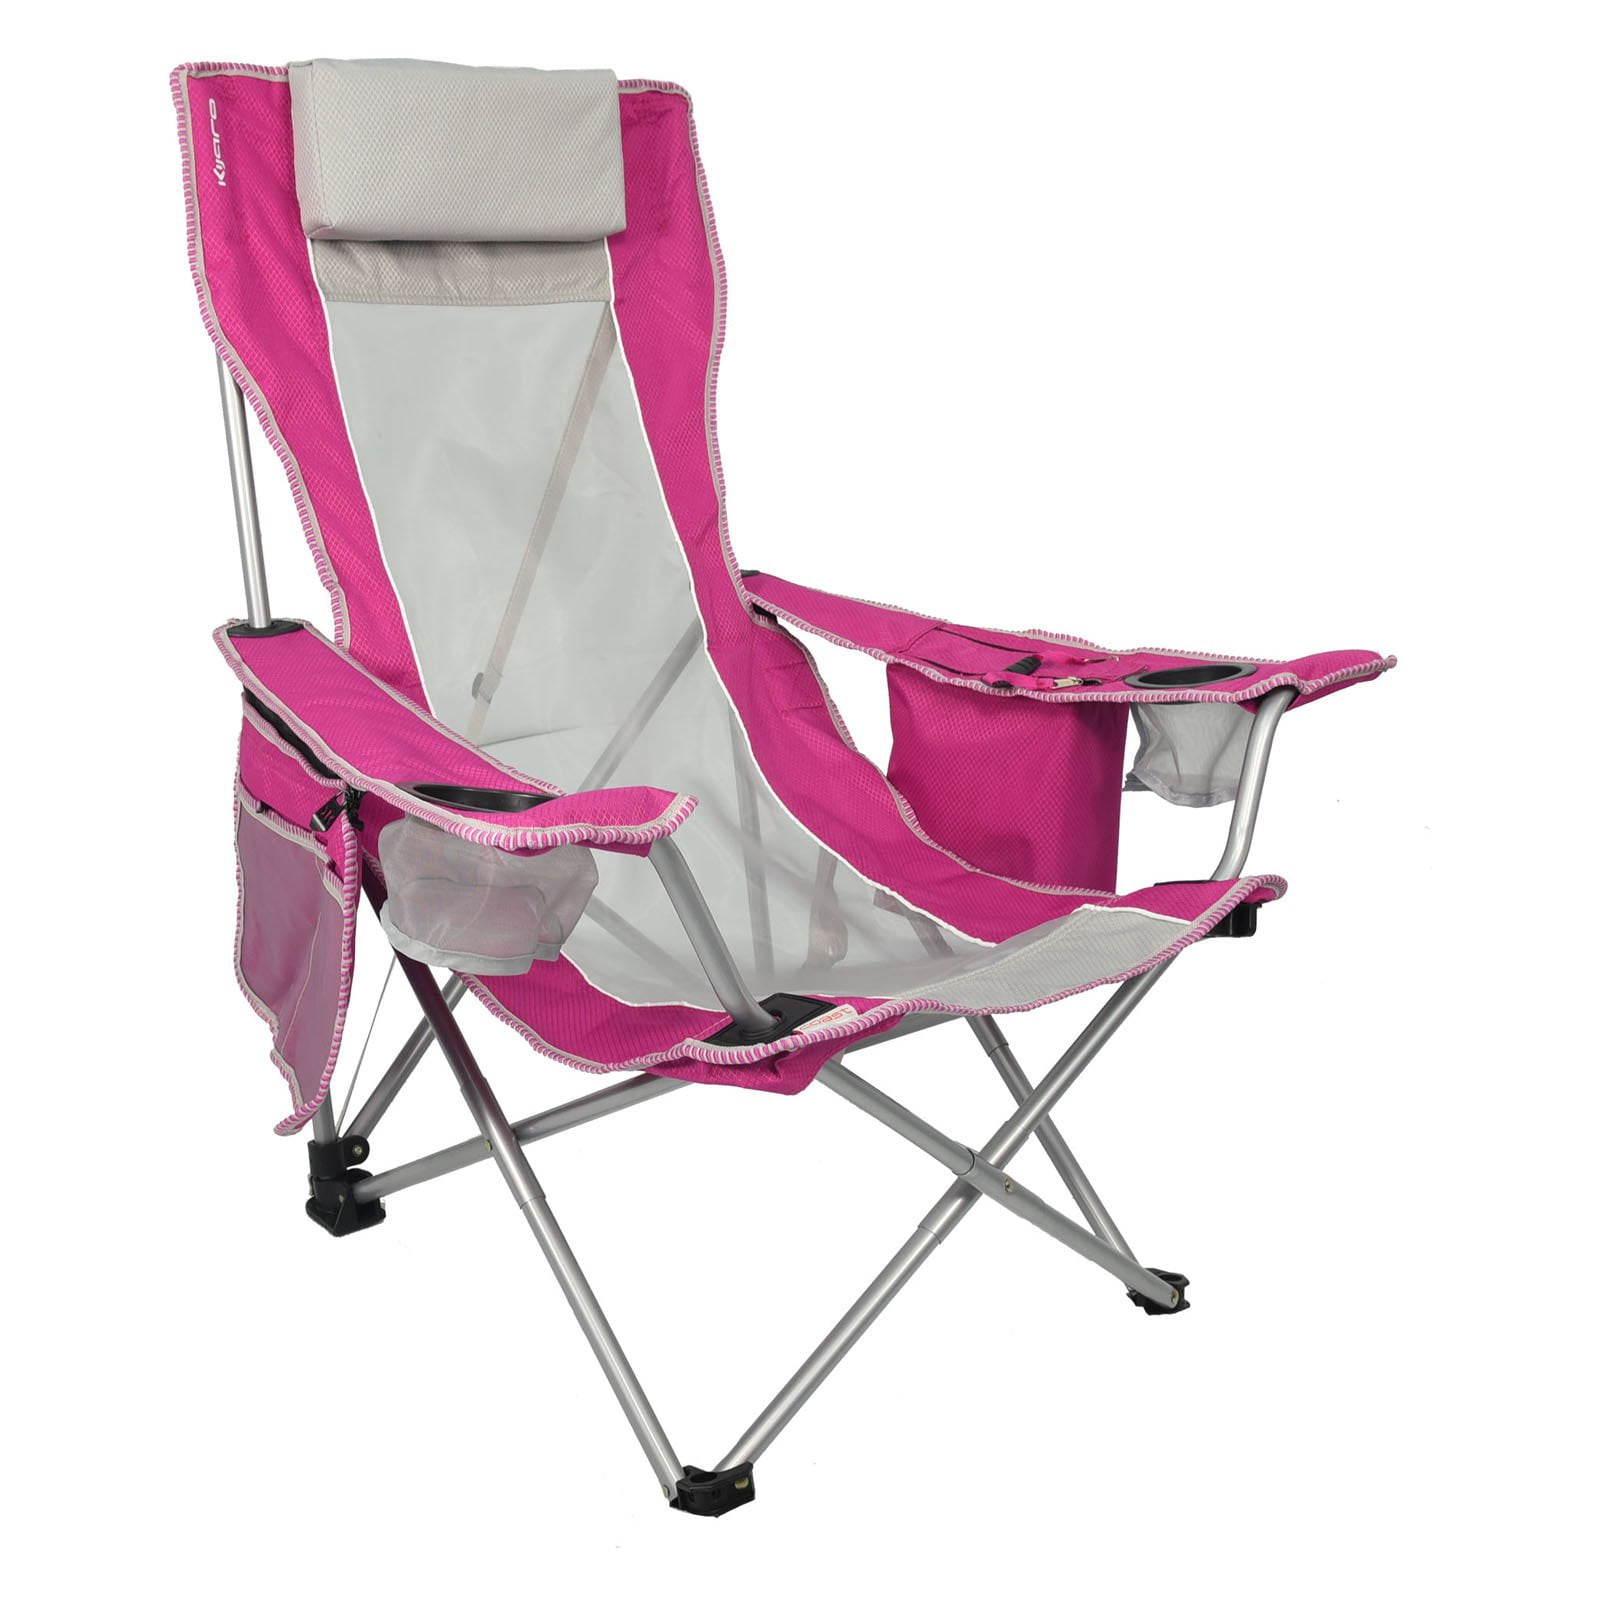 Kijaro  Dual Lock Portable Camping and Sports Chair Hanami Pink 